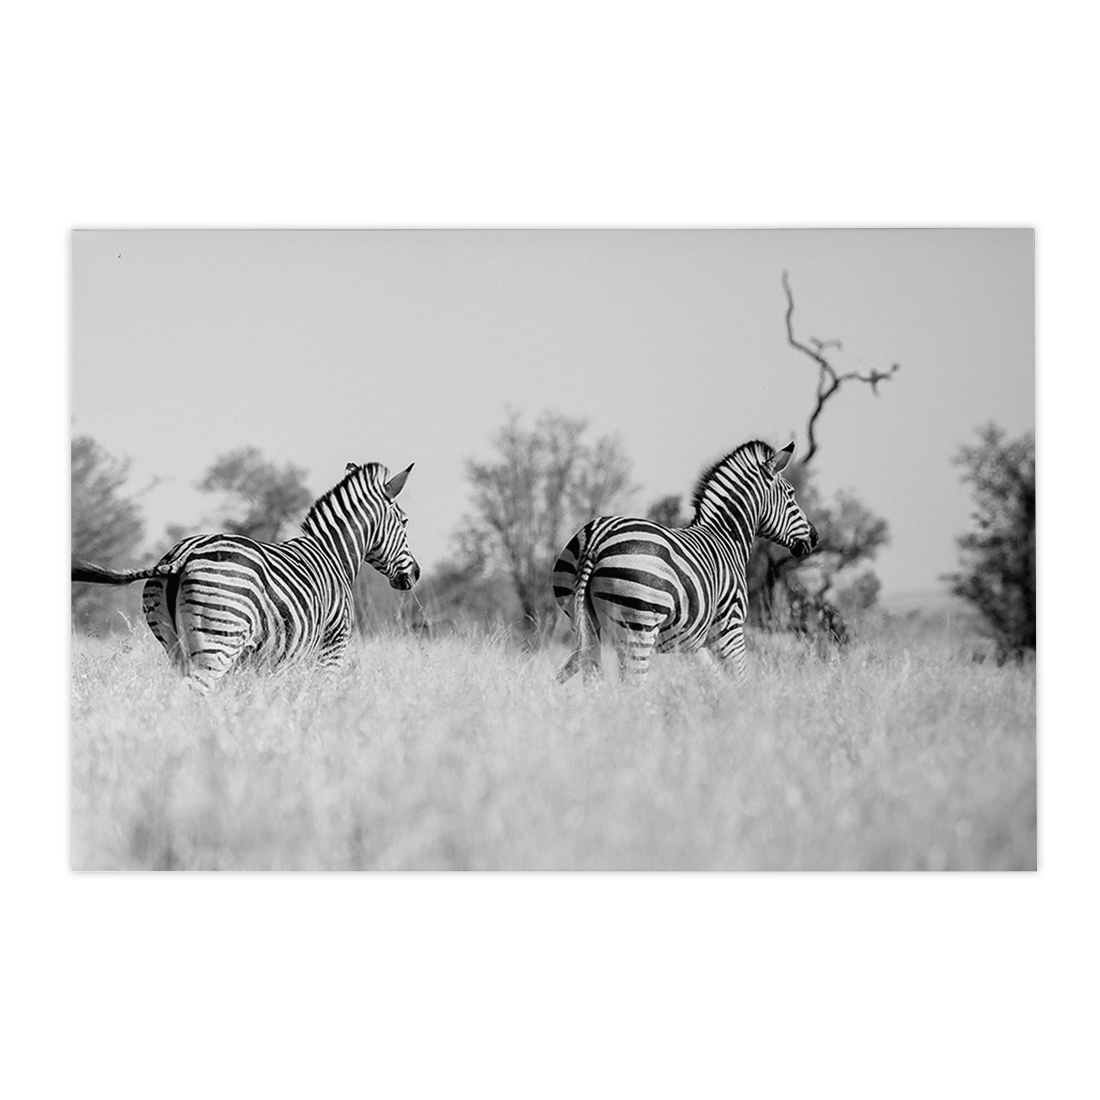 Quadro Decorativo Zebra 3 | Sâmia Munaretti & Marcelo Baldin